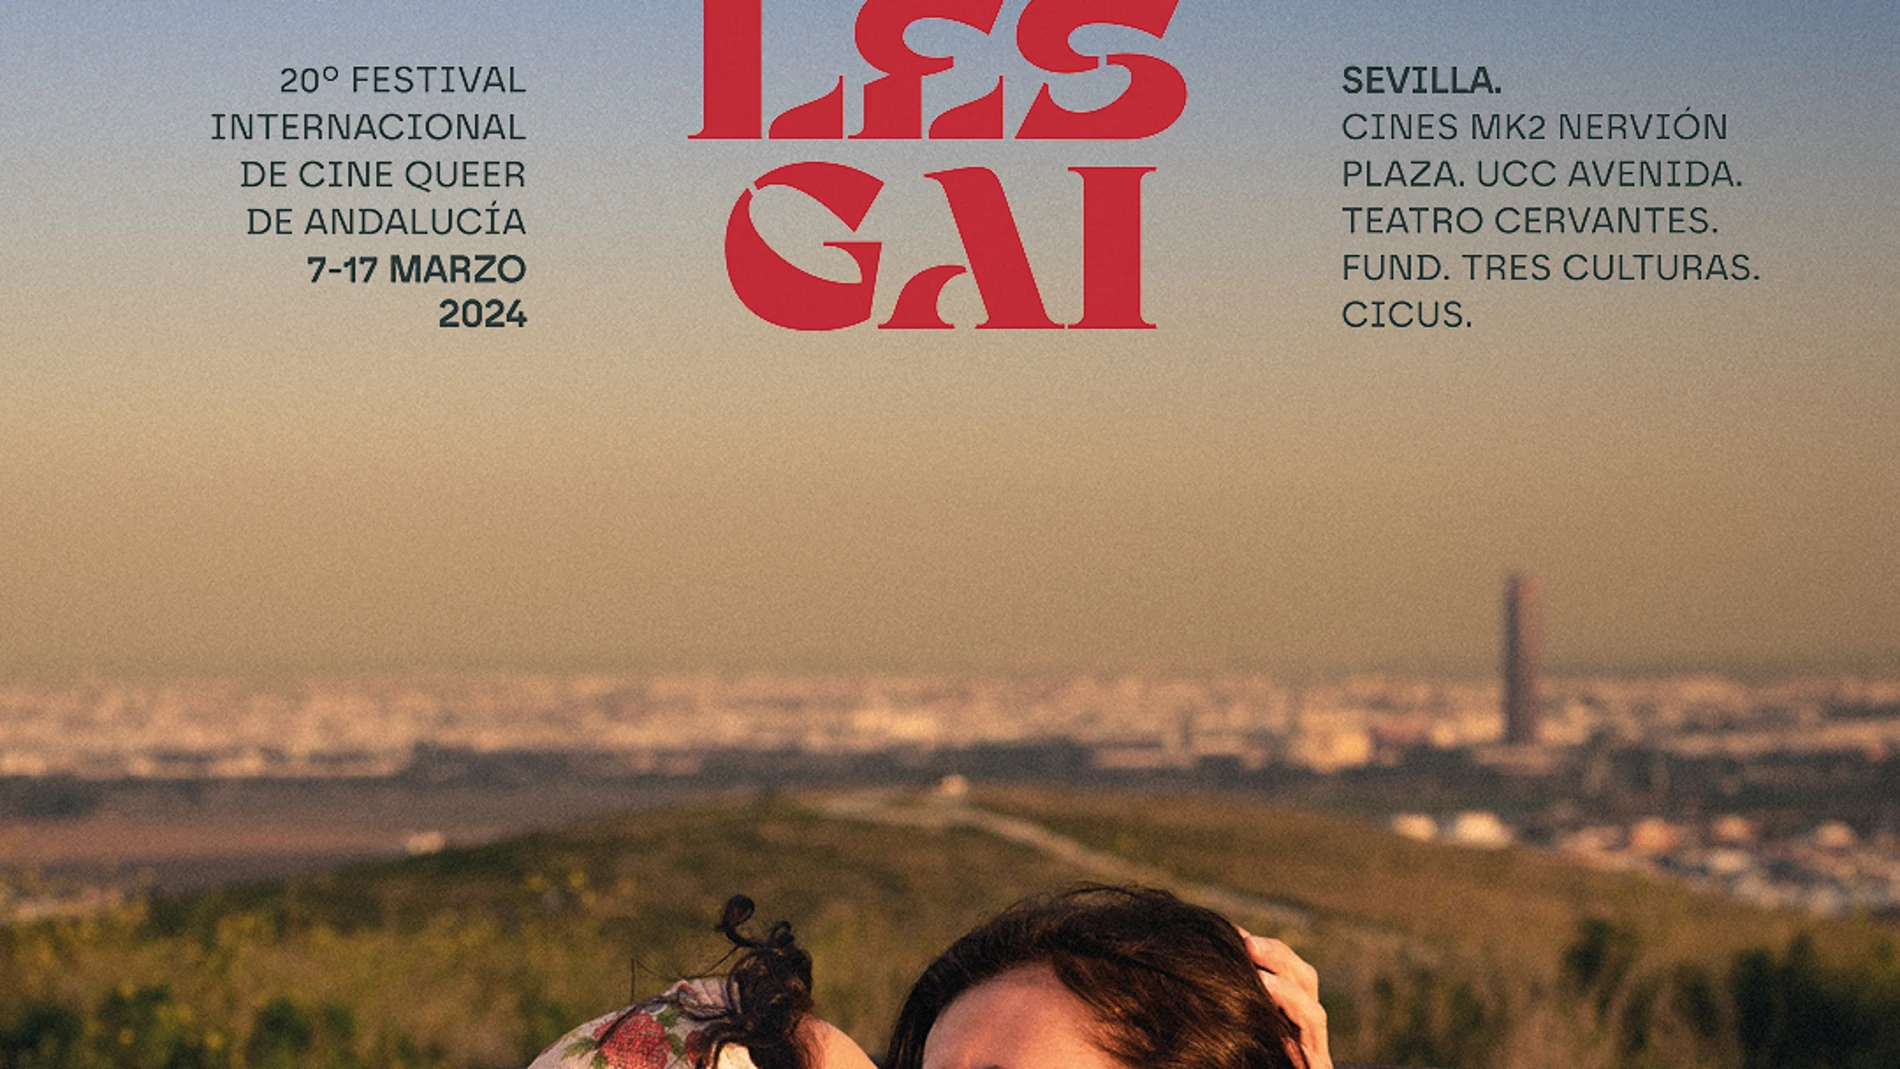 El cartel del Andalesgai, el Festival de Cine Queer de Andalucía